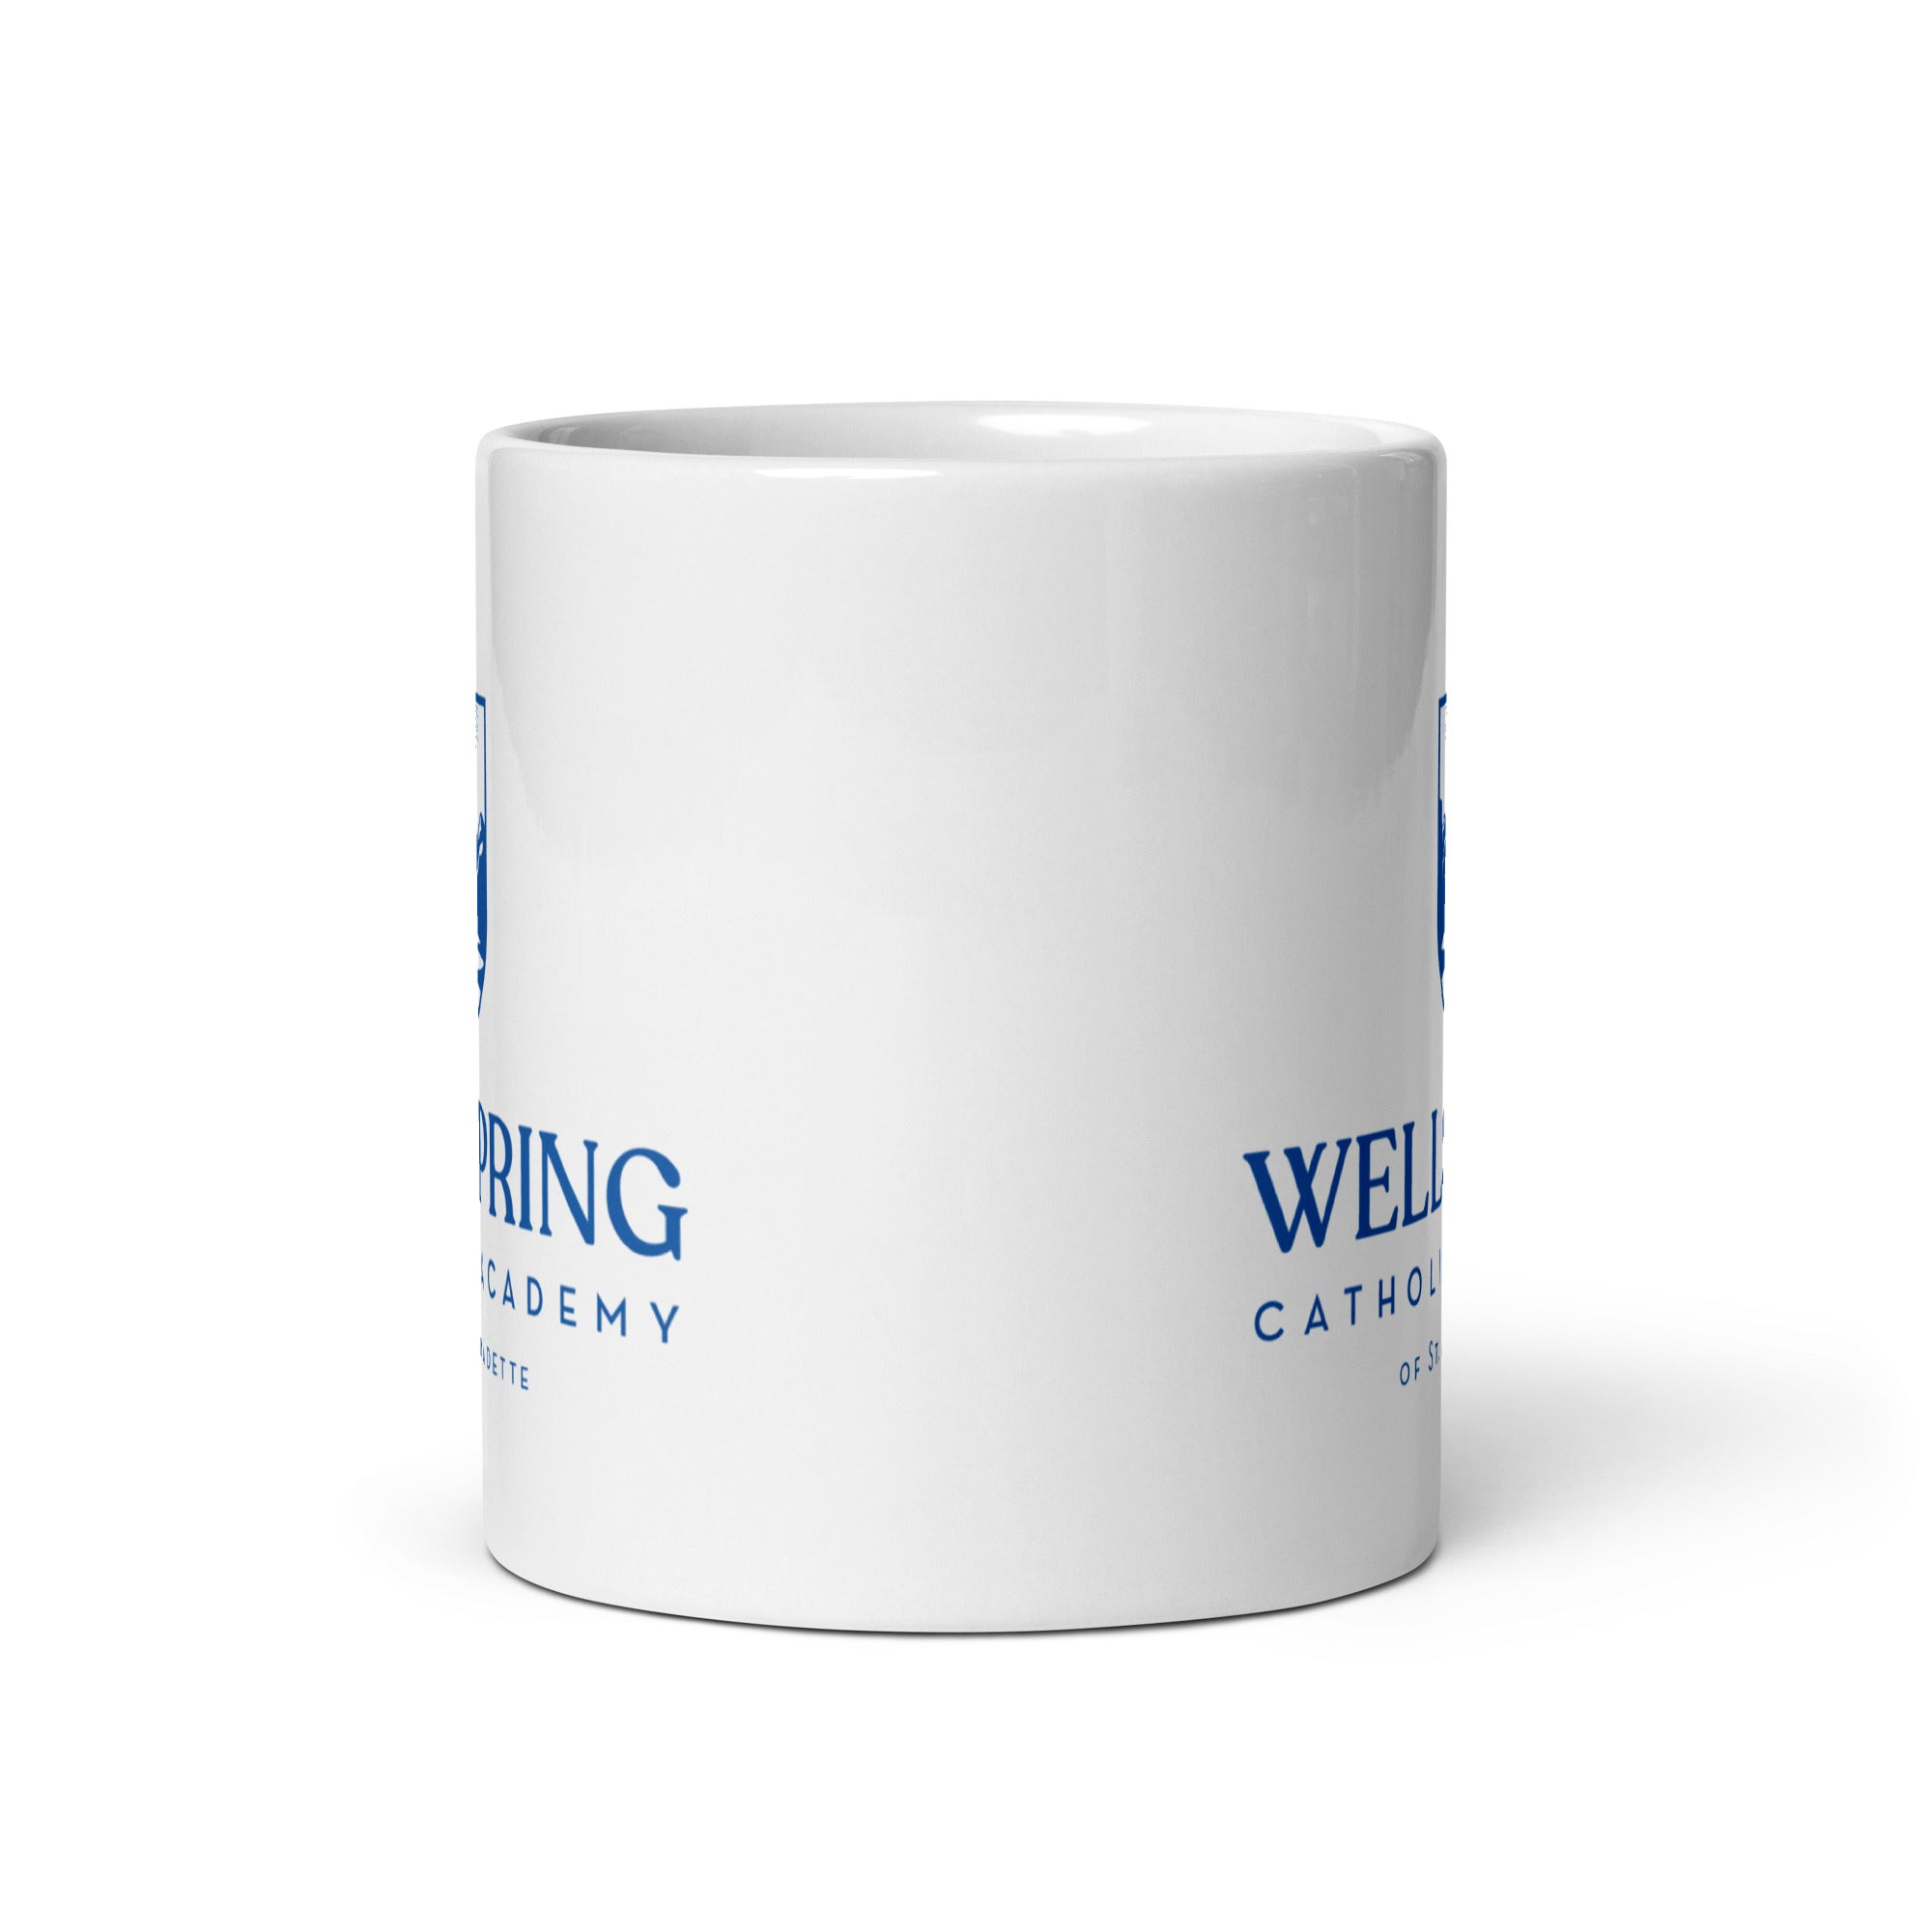 WCA White glossy mug